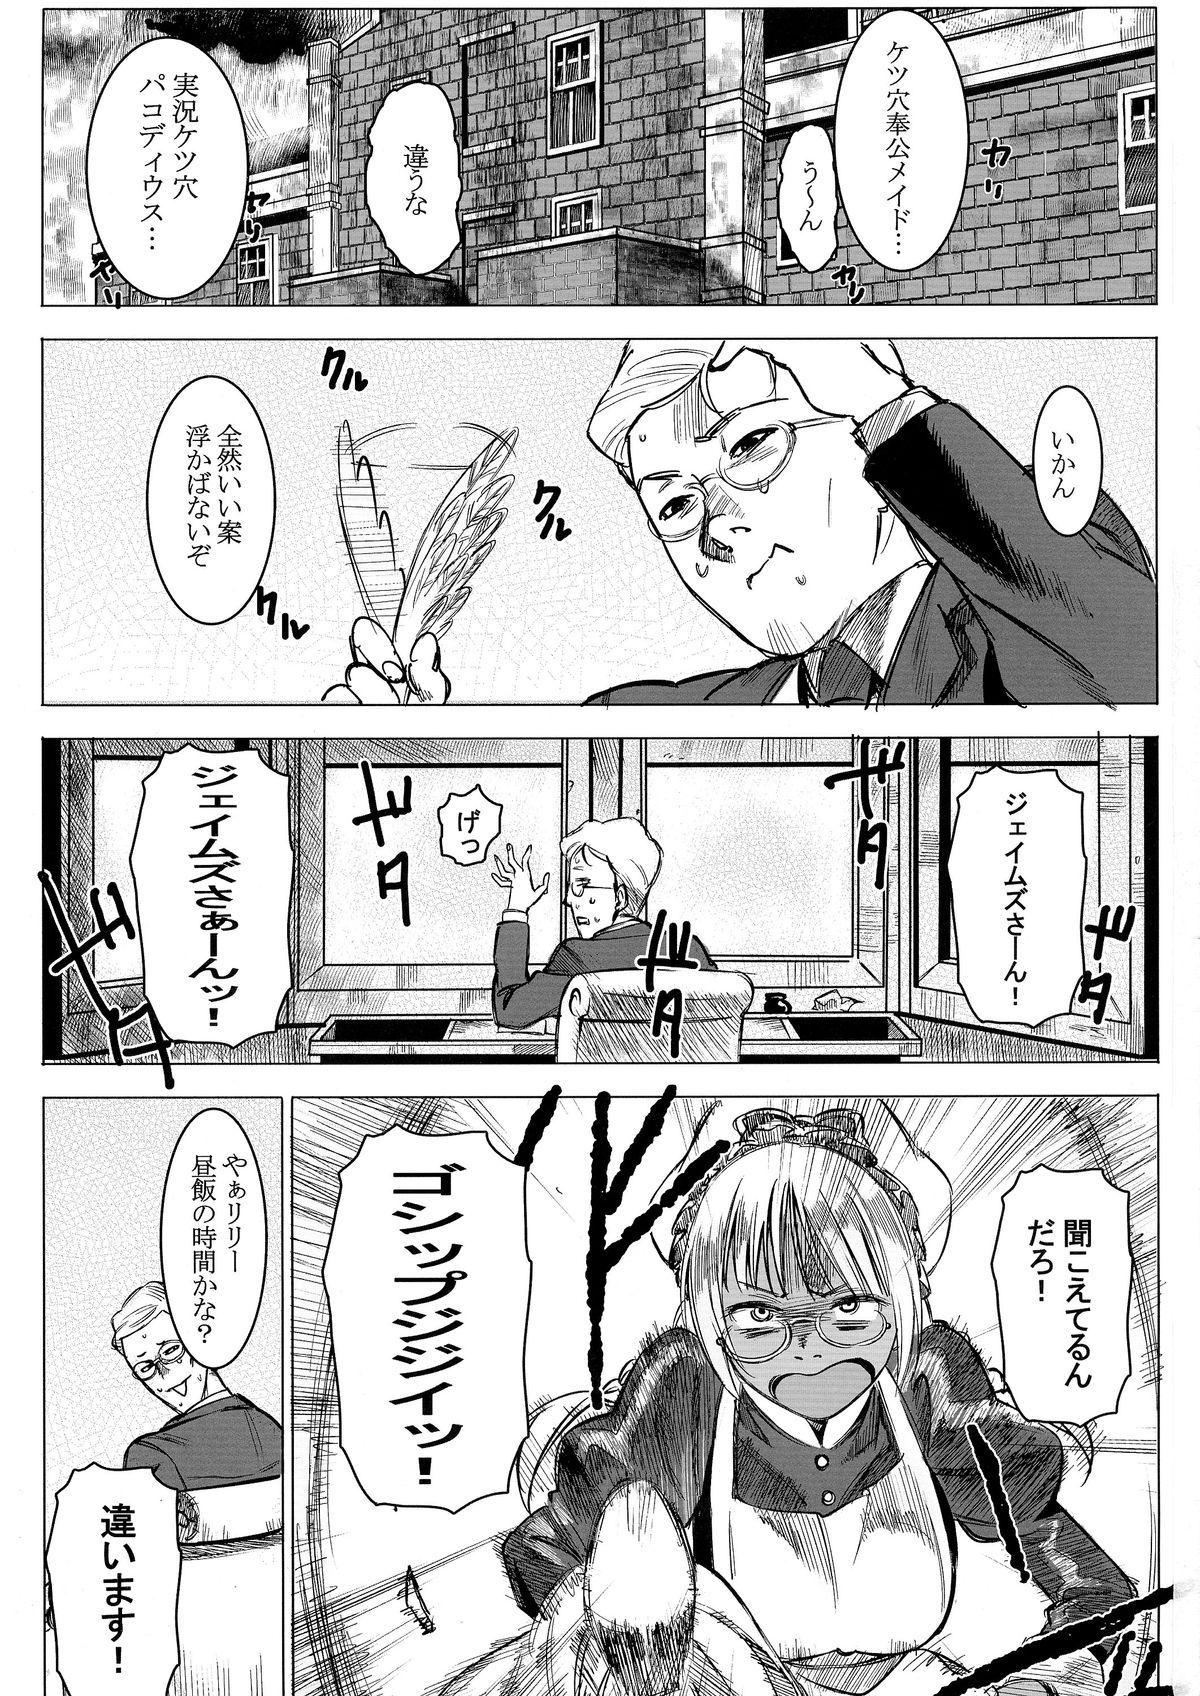 Old Man Kasshoku Kokumaro Funnyuu Maid! Baka ka!!! Gayporn - Page 2